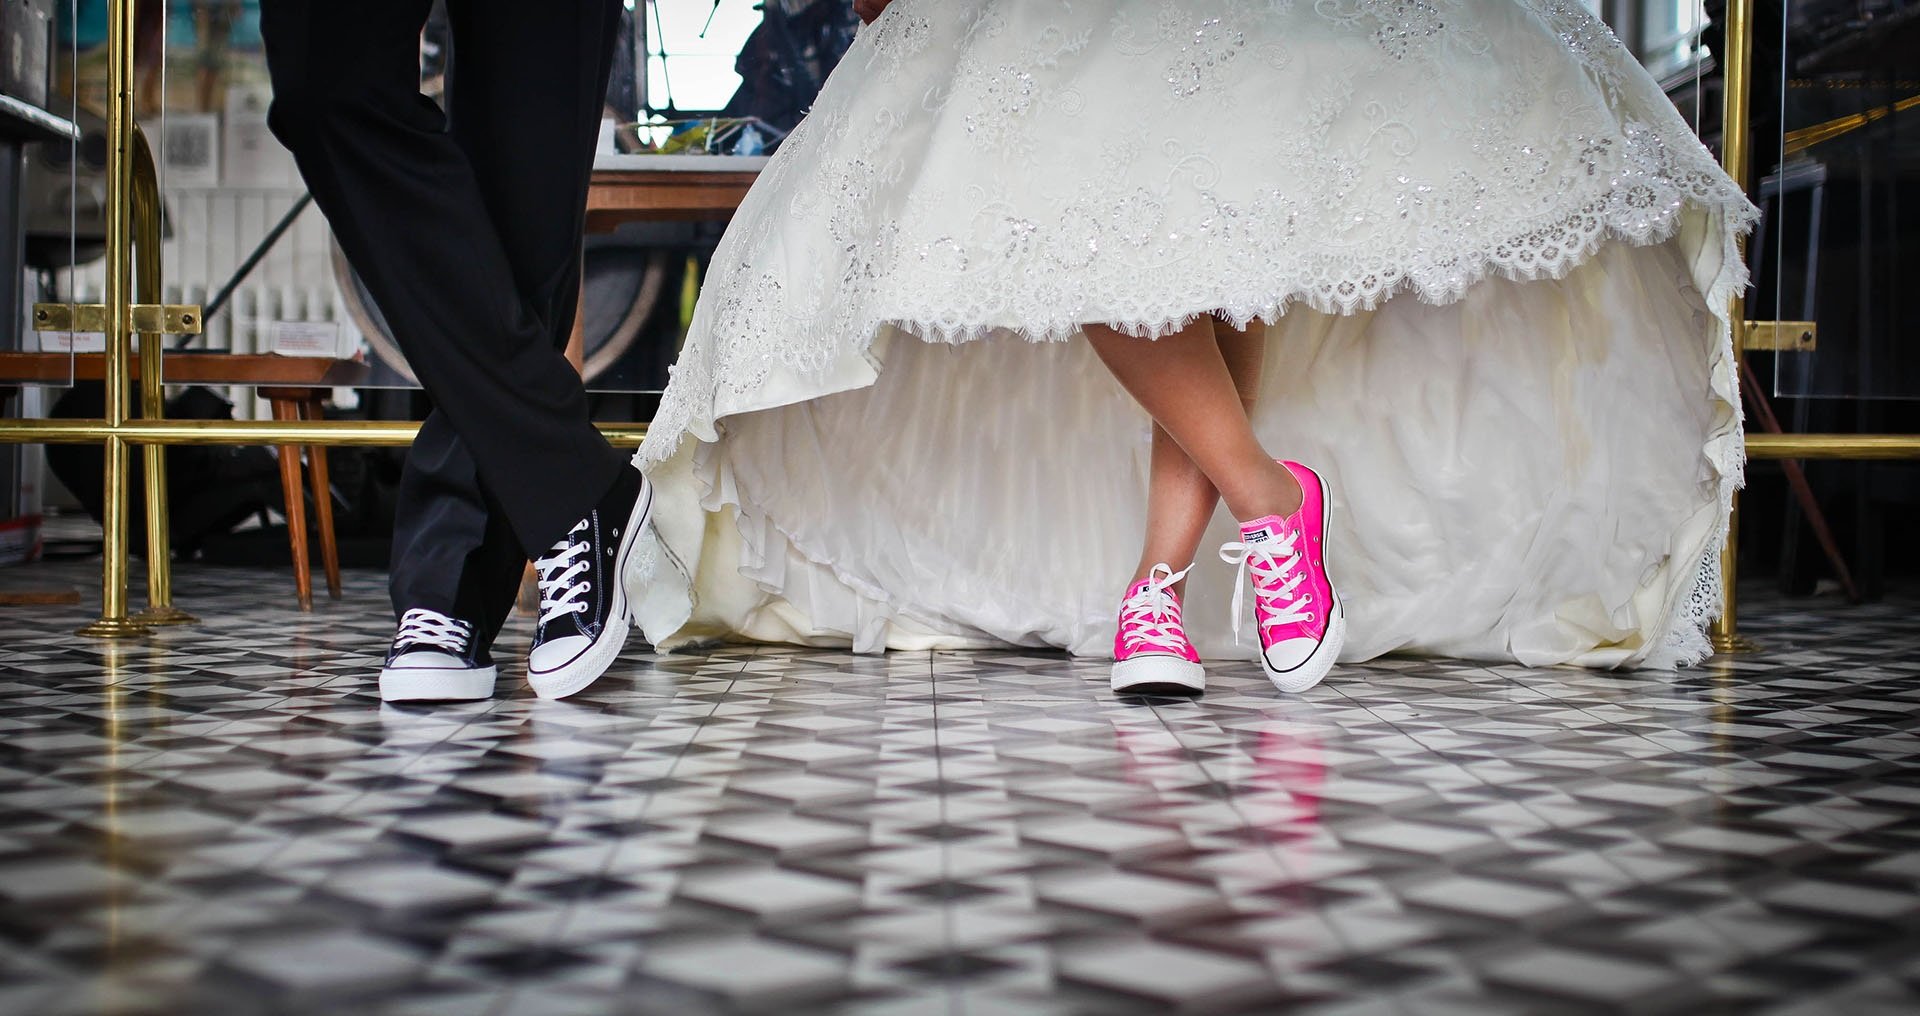 Novio y novia con zapatillas deportivas y trajes de bodas. Fuente: Pixabay